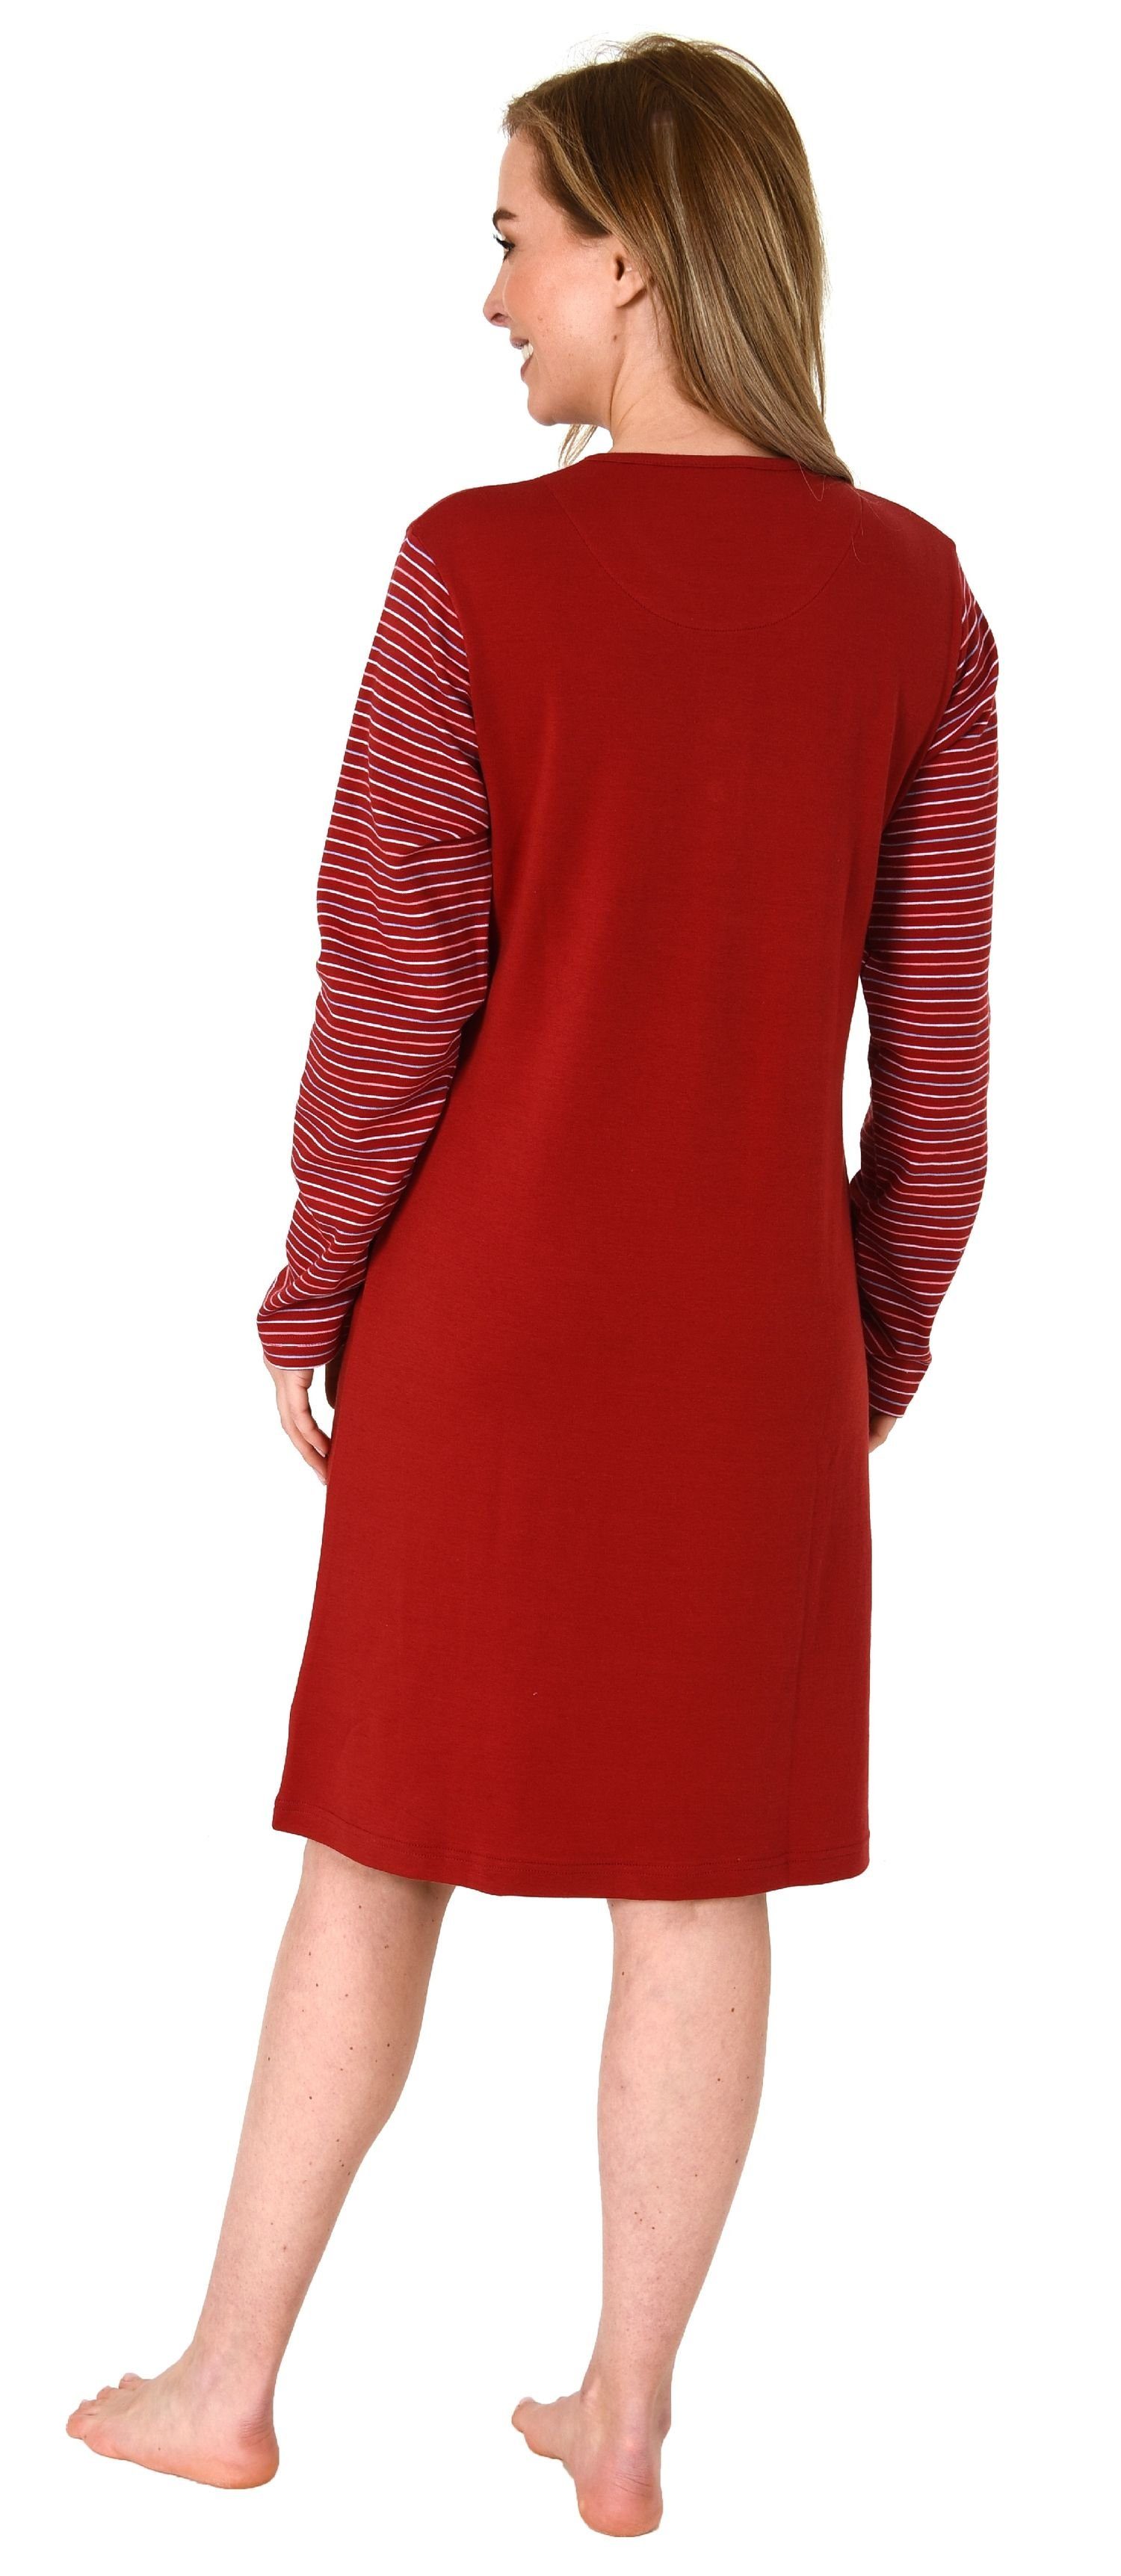 Kuschel Interlock Damen langarm Normann rot in Nachthemd Qualität Nachthemd